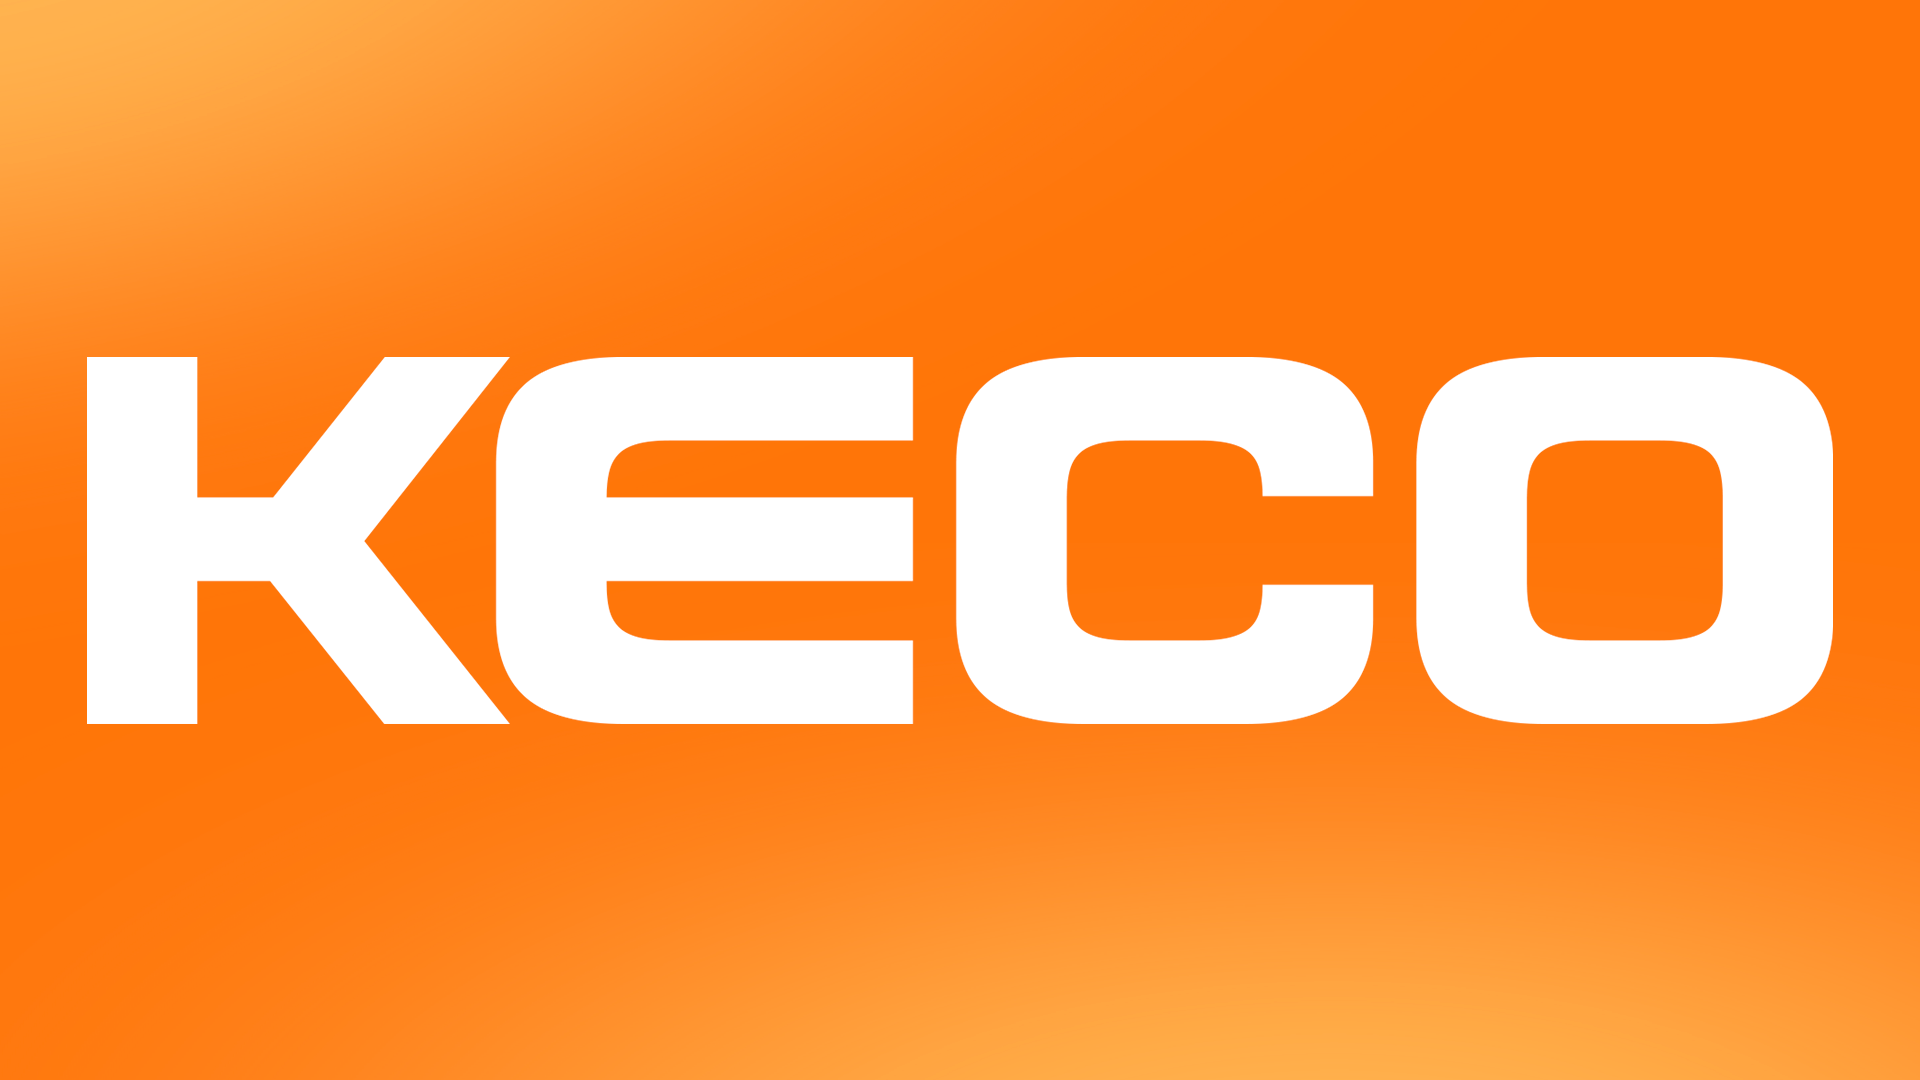 Conoce a Keco, el nuevo socio de Alutal en el segmento de análisis de procesos